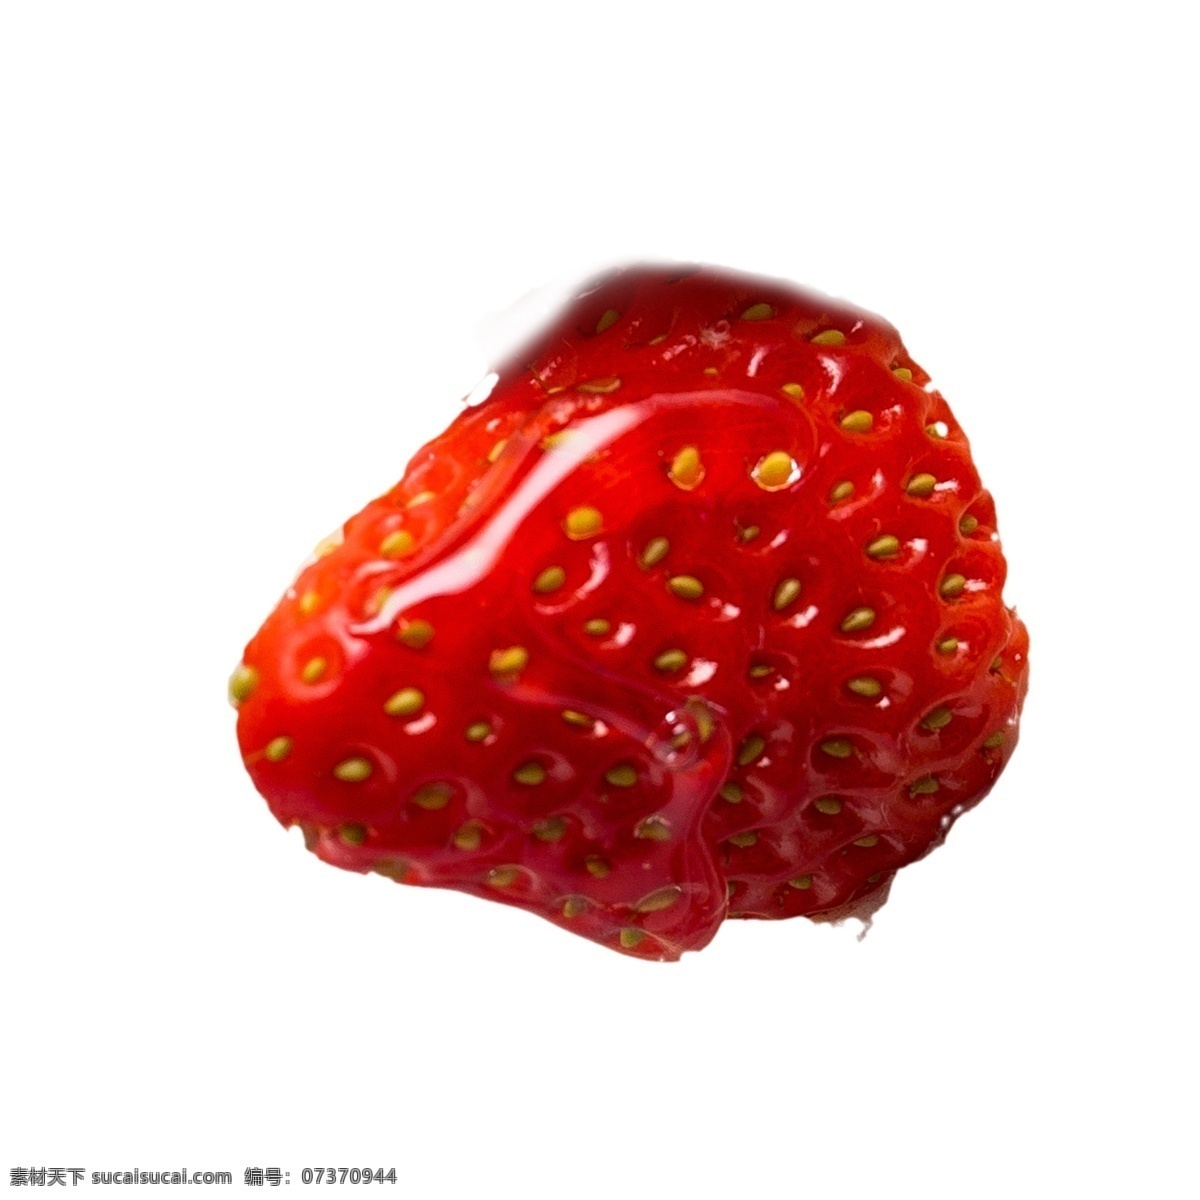 红色 草莓 免 抠 图 新鲜草莓 水果 植物 香喷喷的水果 美味草莓 红通通 红色的草莓 免抠图